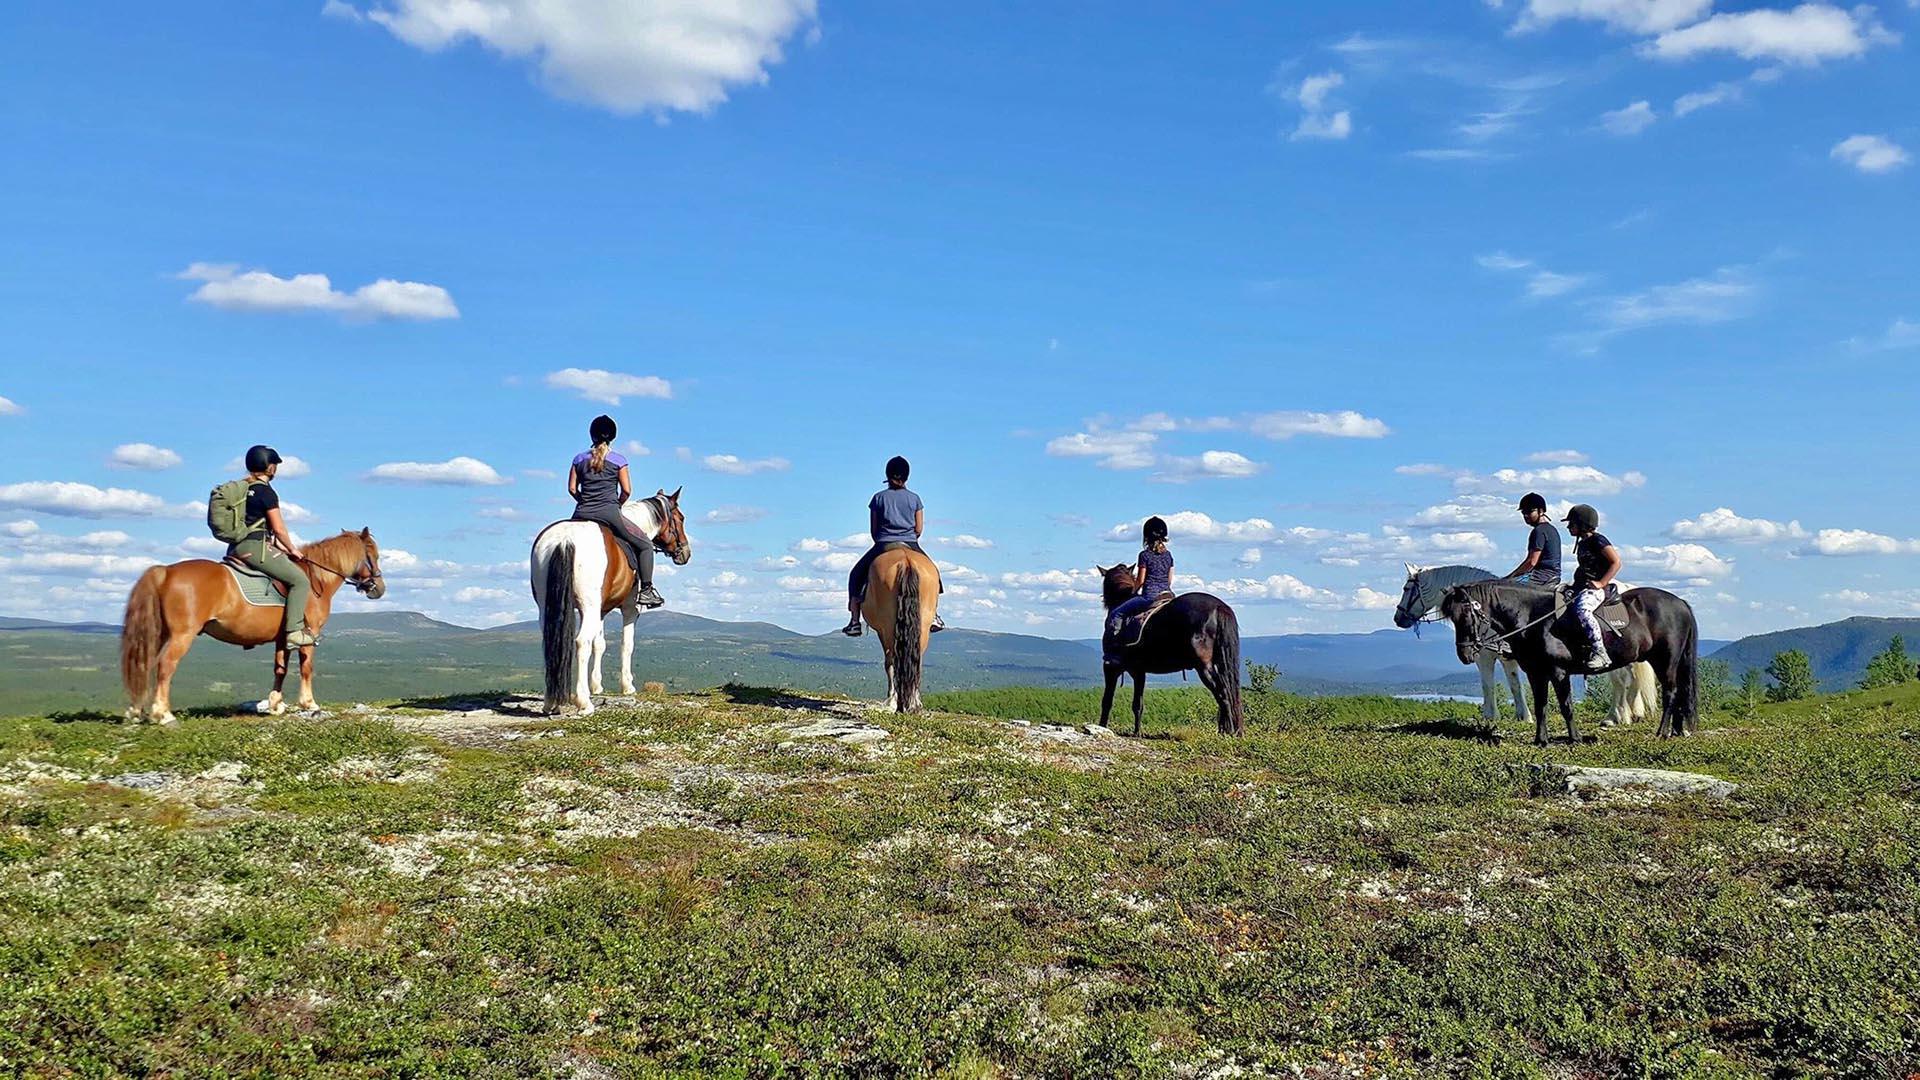 Sechs Reiter auf dem Pferderücken von hinten gesehen, die inweite Berglandschaft schauen